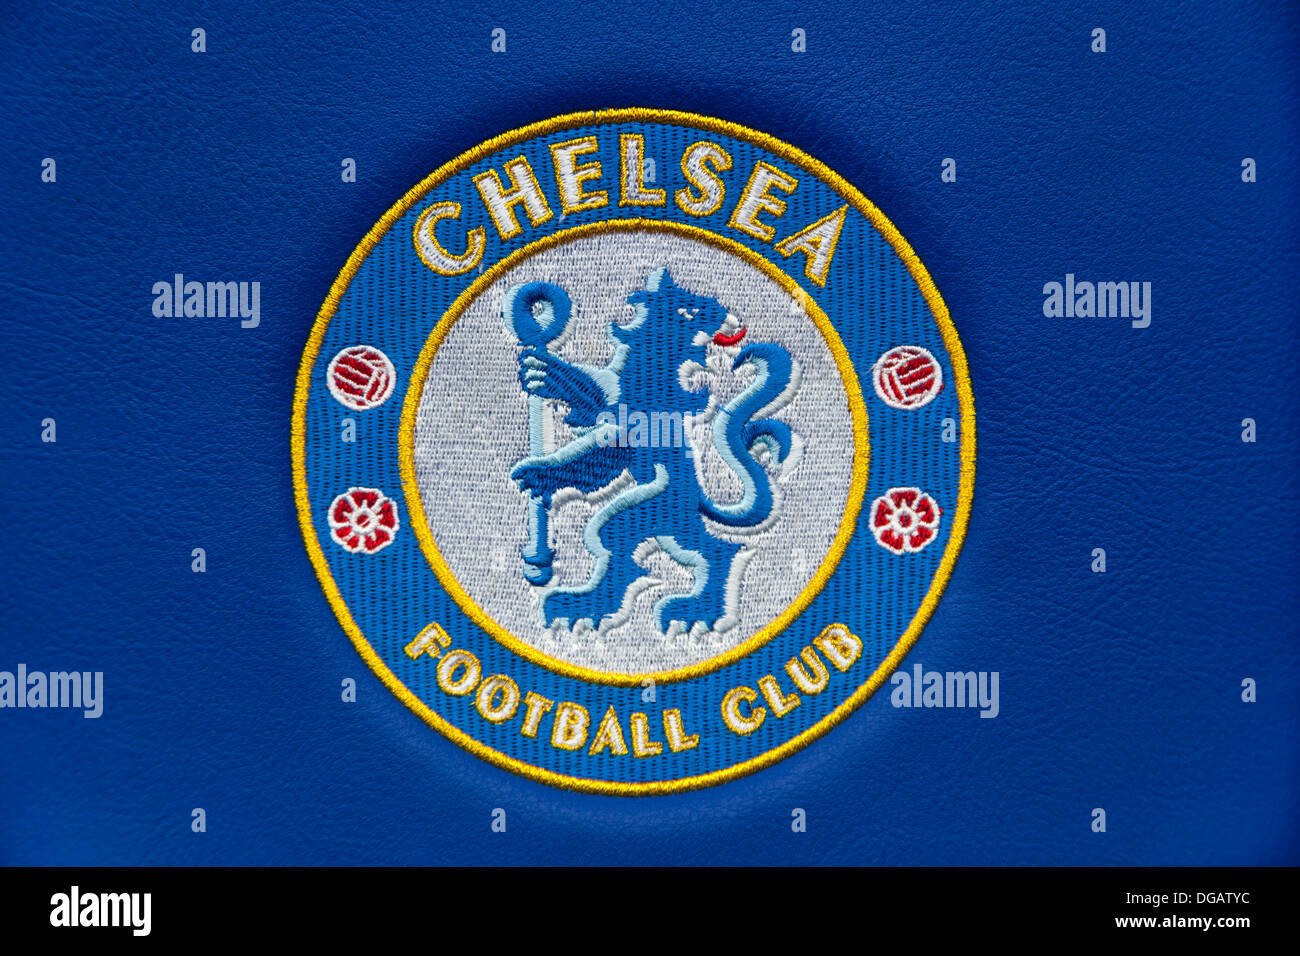 Chelsea Football Club logo sur un siège à l'creusées à Chelsea, le Club de Football de Chelsea, Stamford Bridge, Londres, Angleterre Banque D'Images